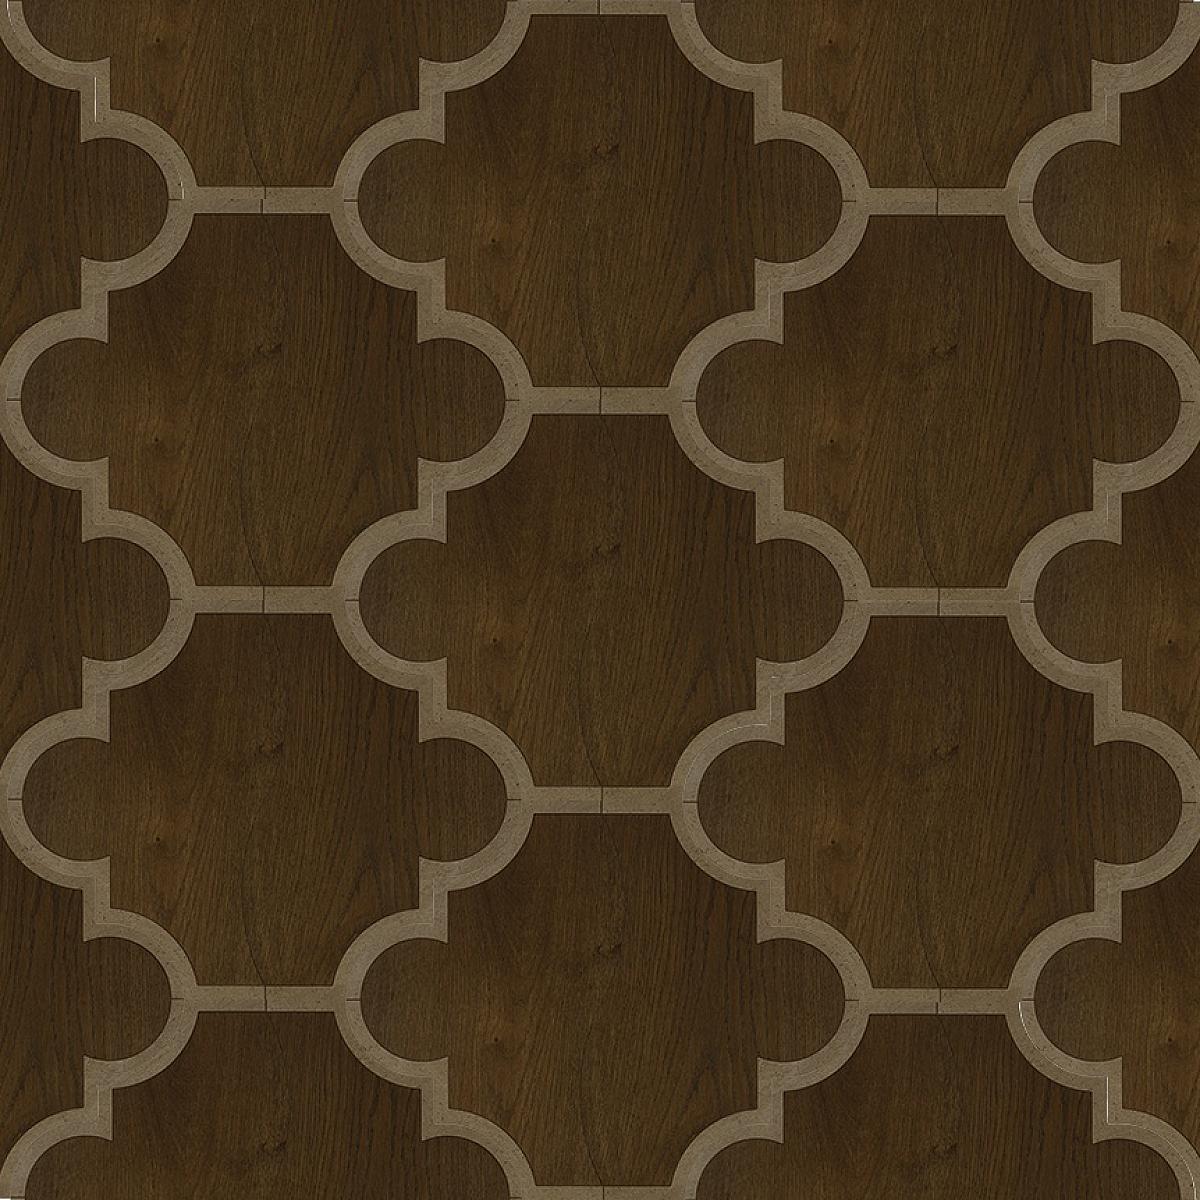 Suave Due Chiave Decorative Tile